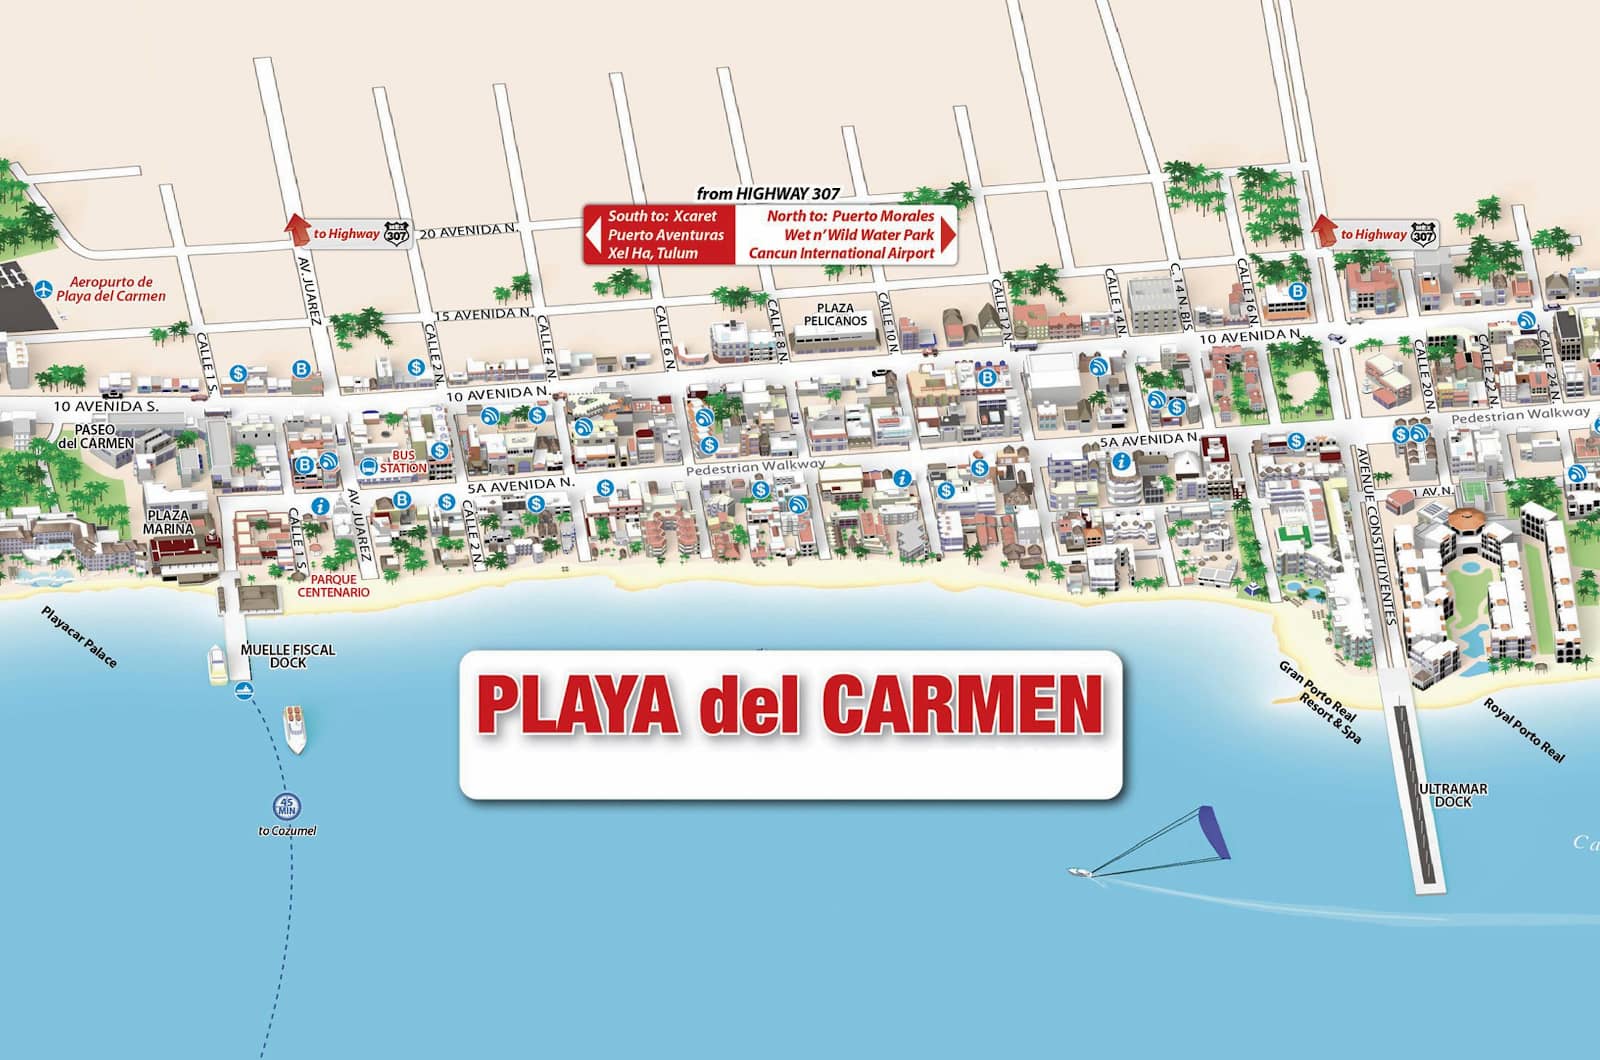 Downtown Playa del Carmen.